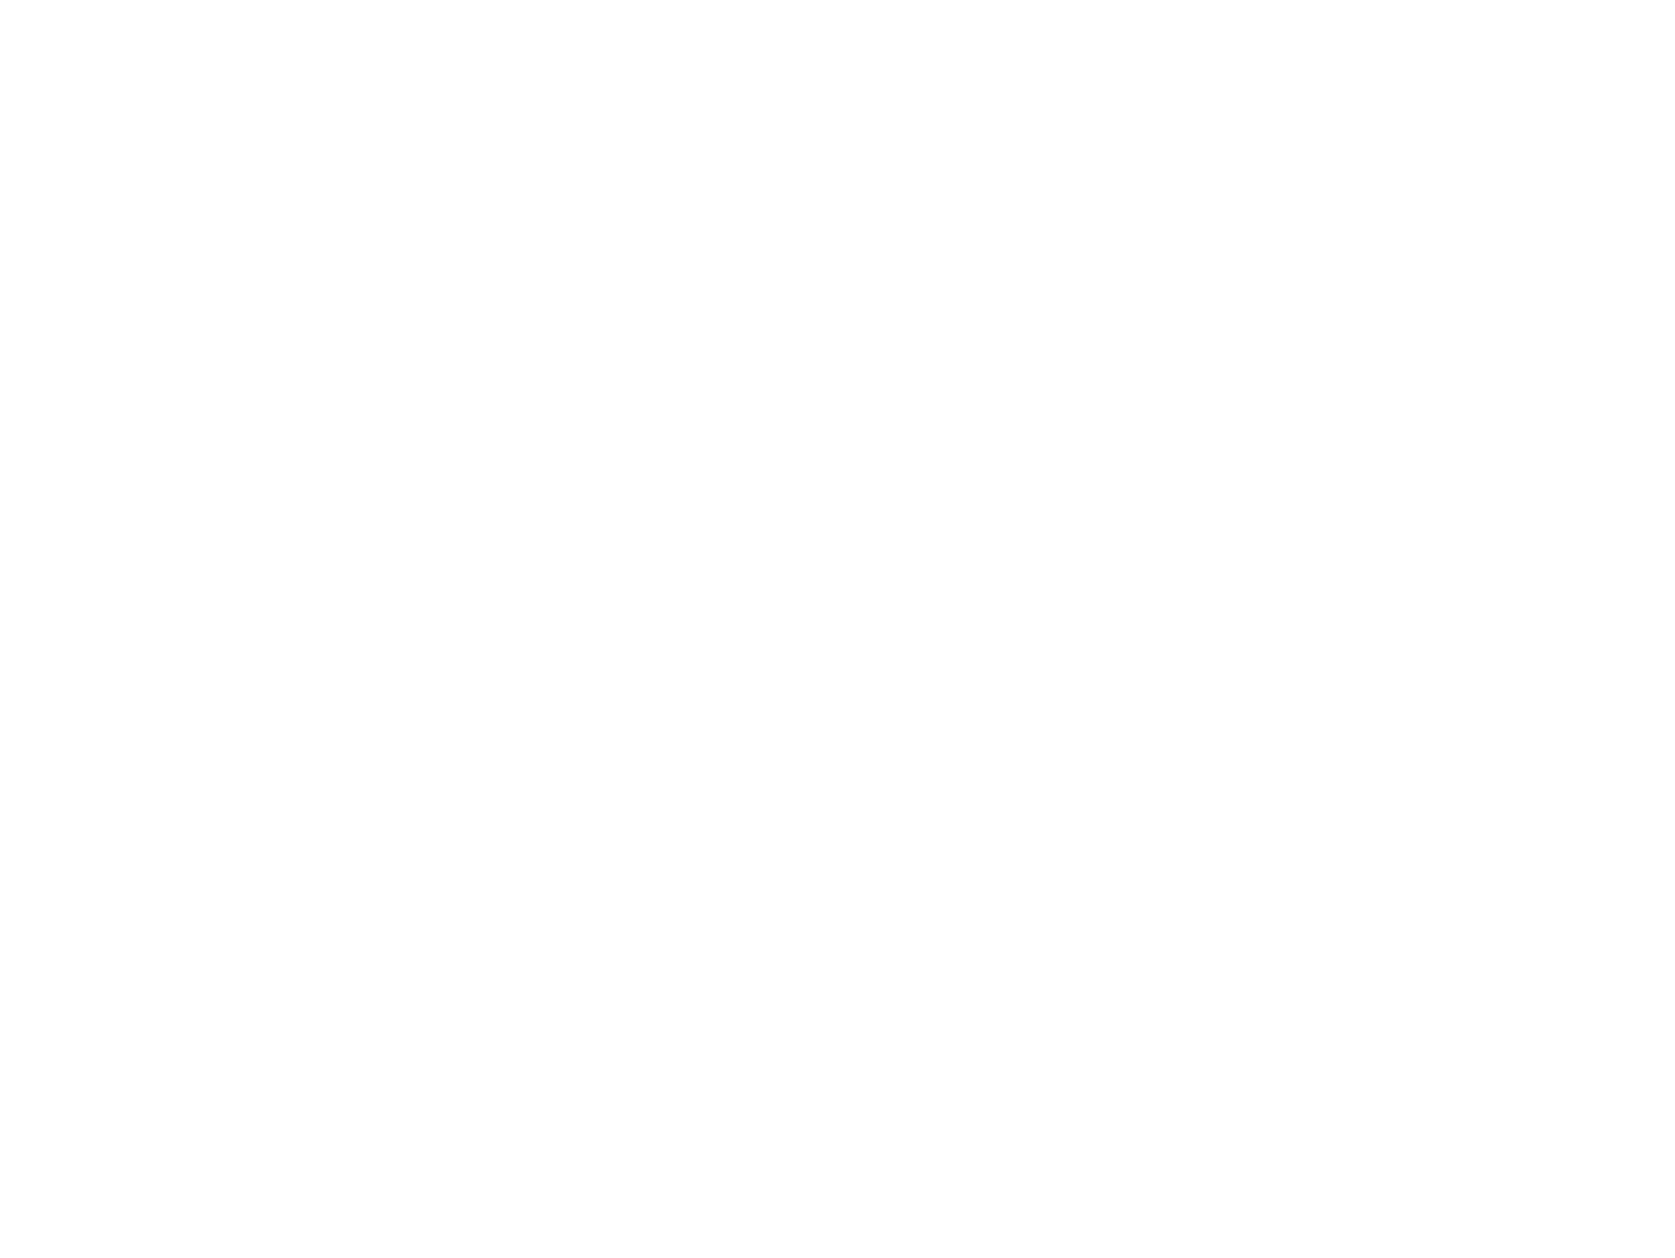 Crosby Park